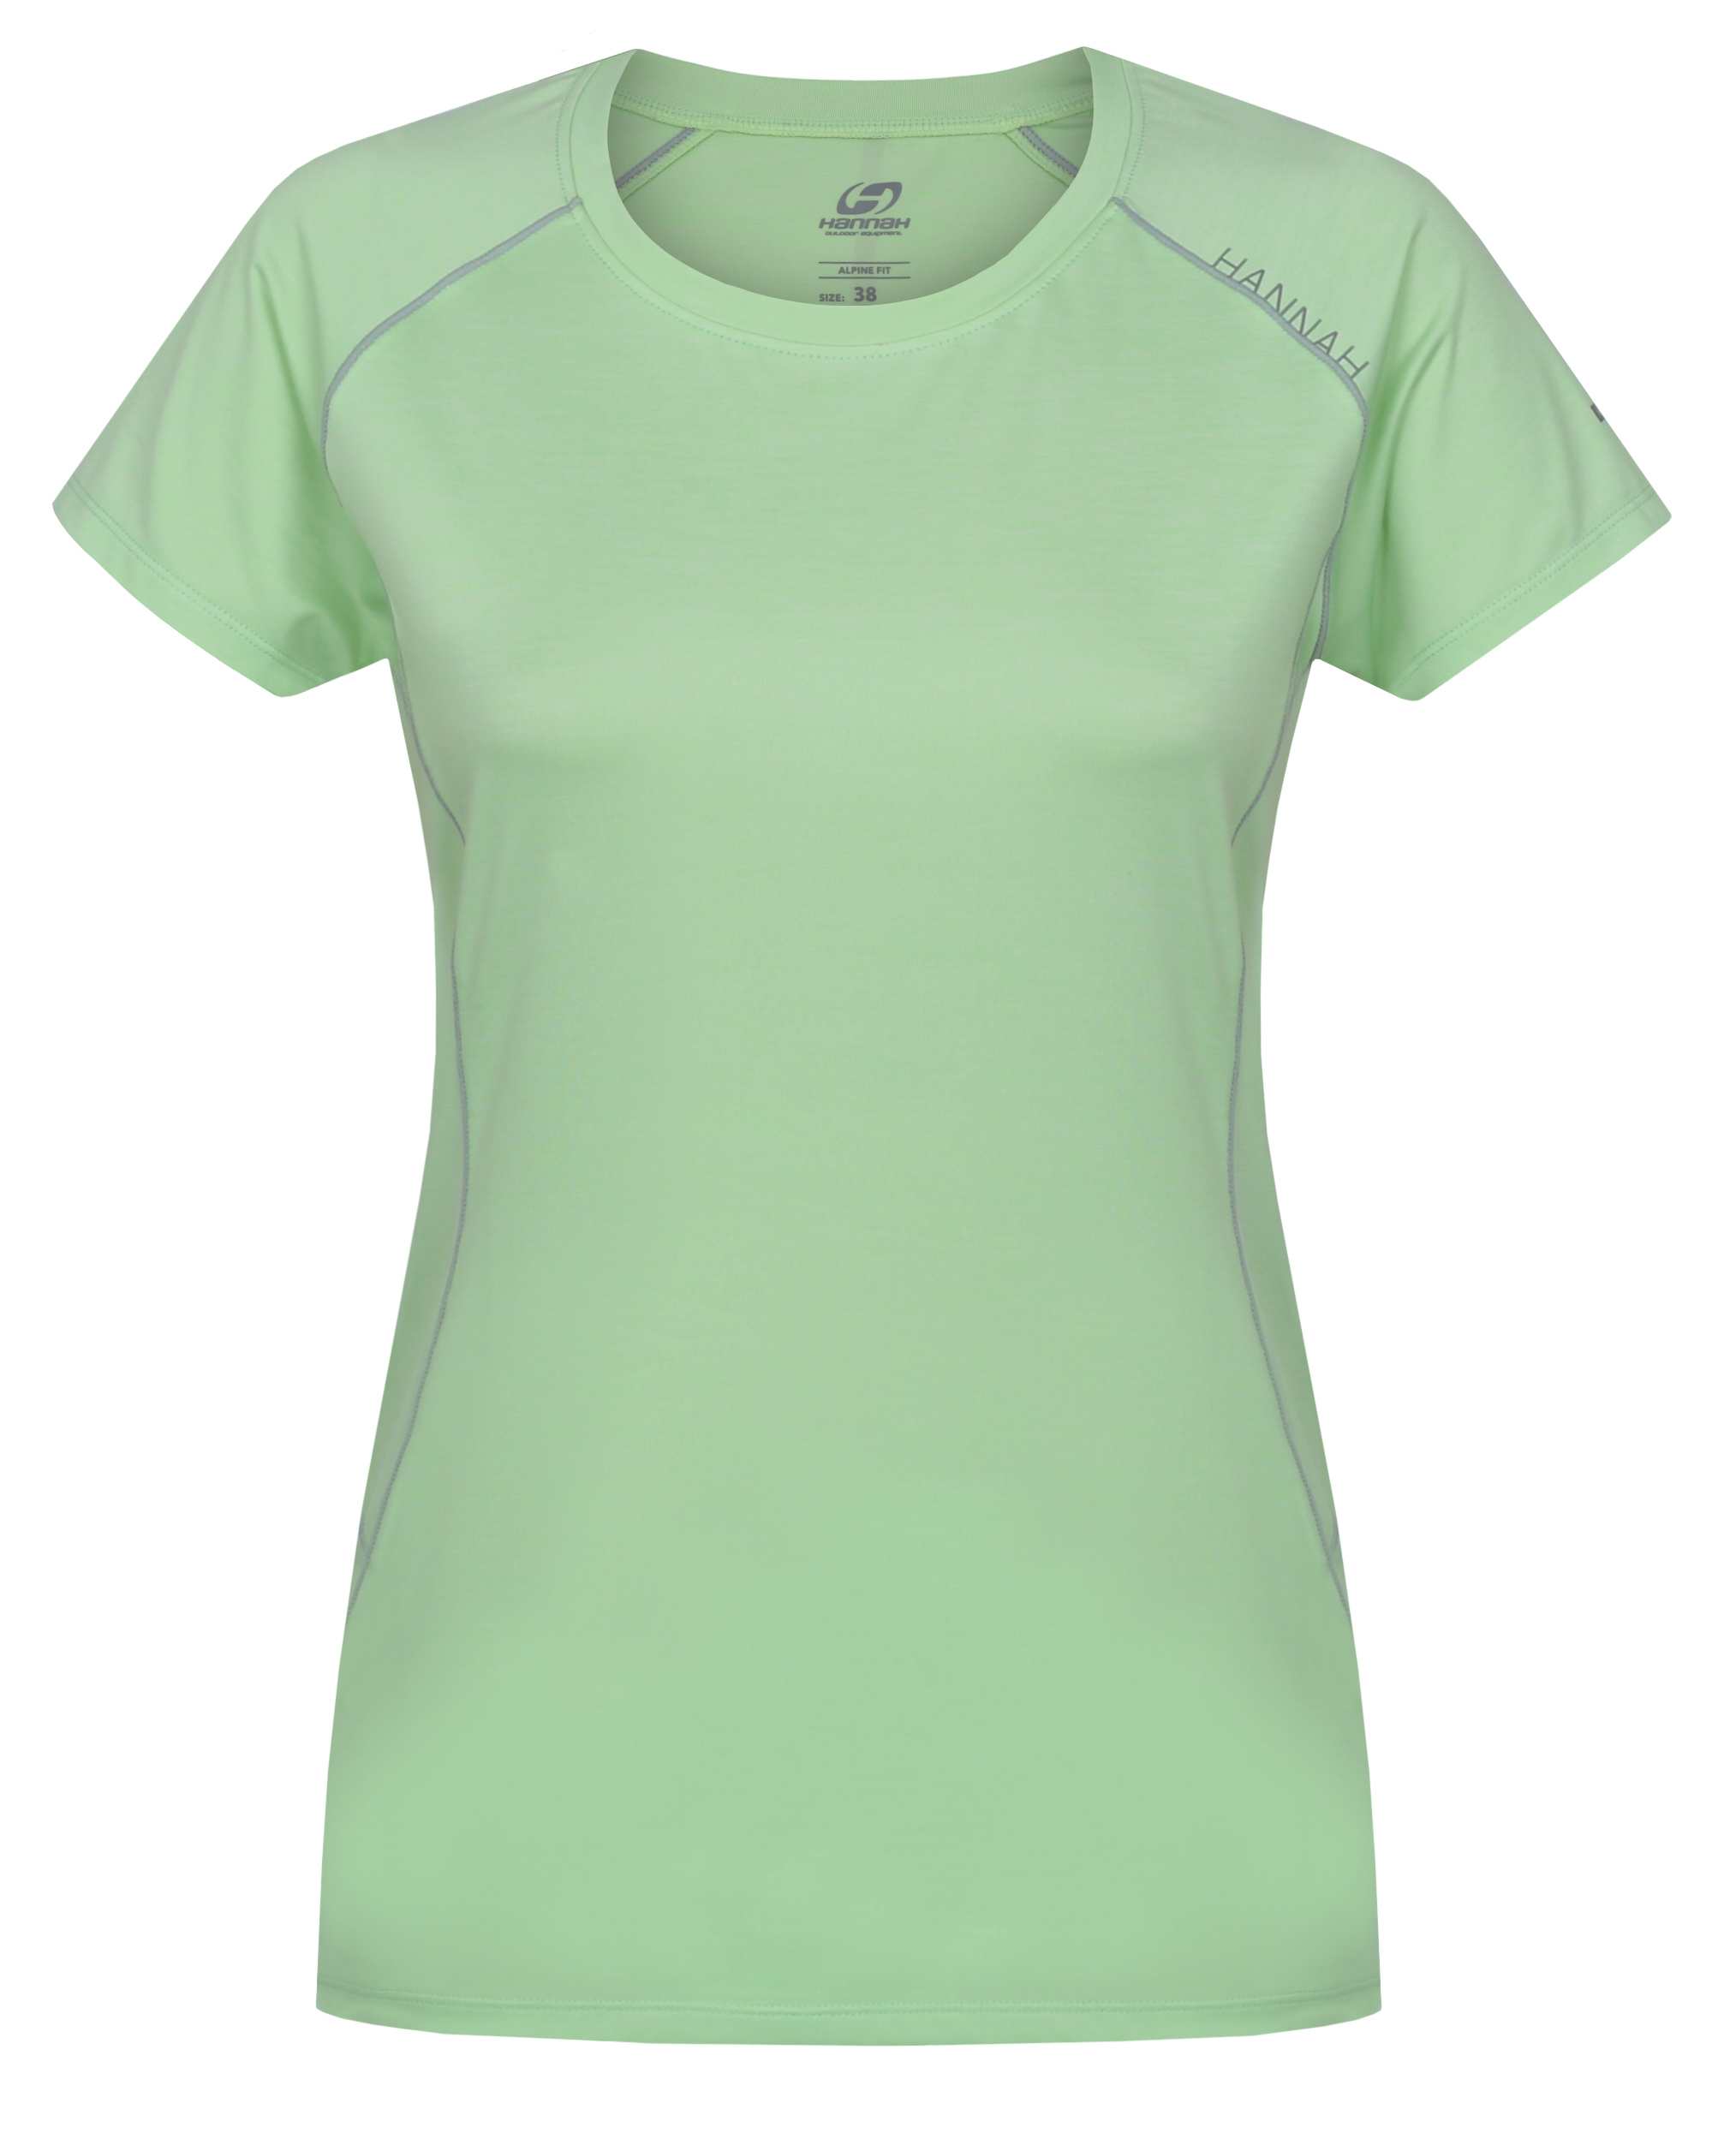 Hannah SHELLY II paradise green mel Velikost: 36 dámské tričko s krátkým rukávem